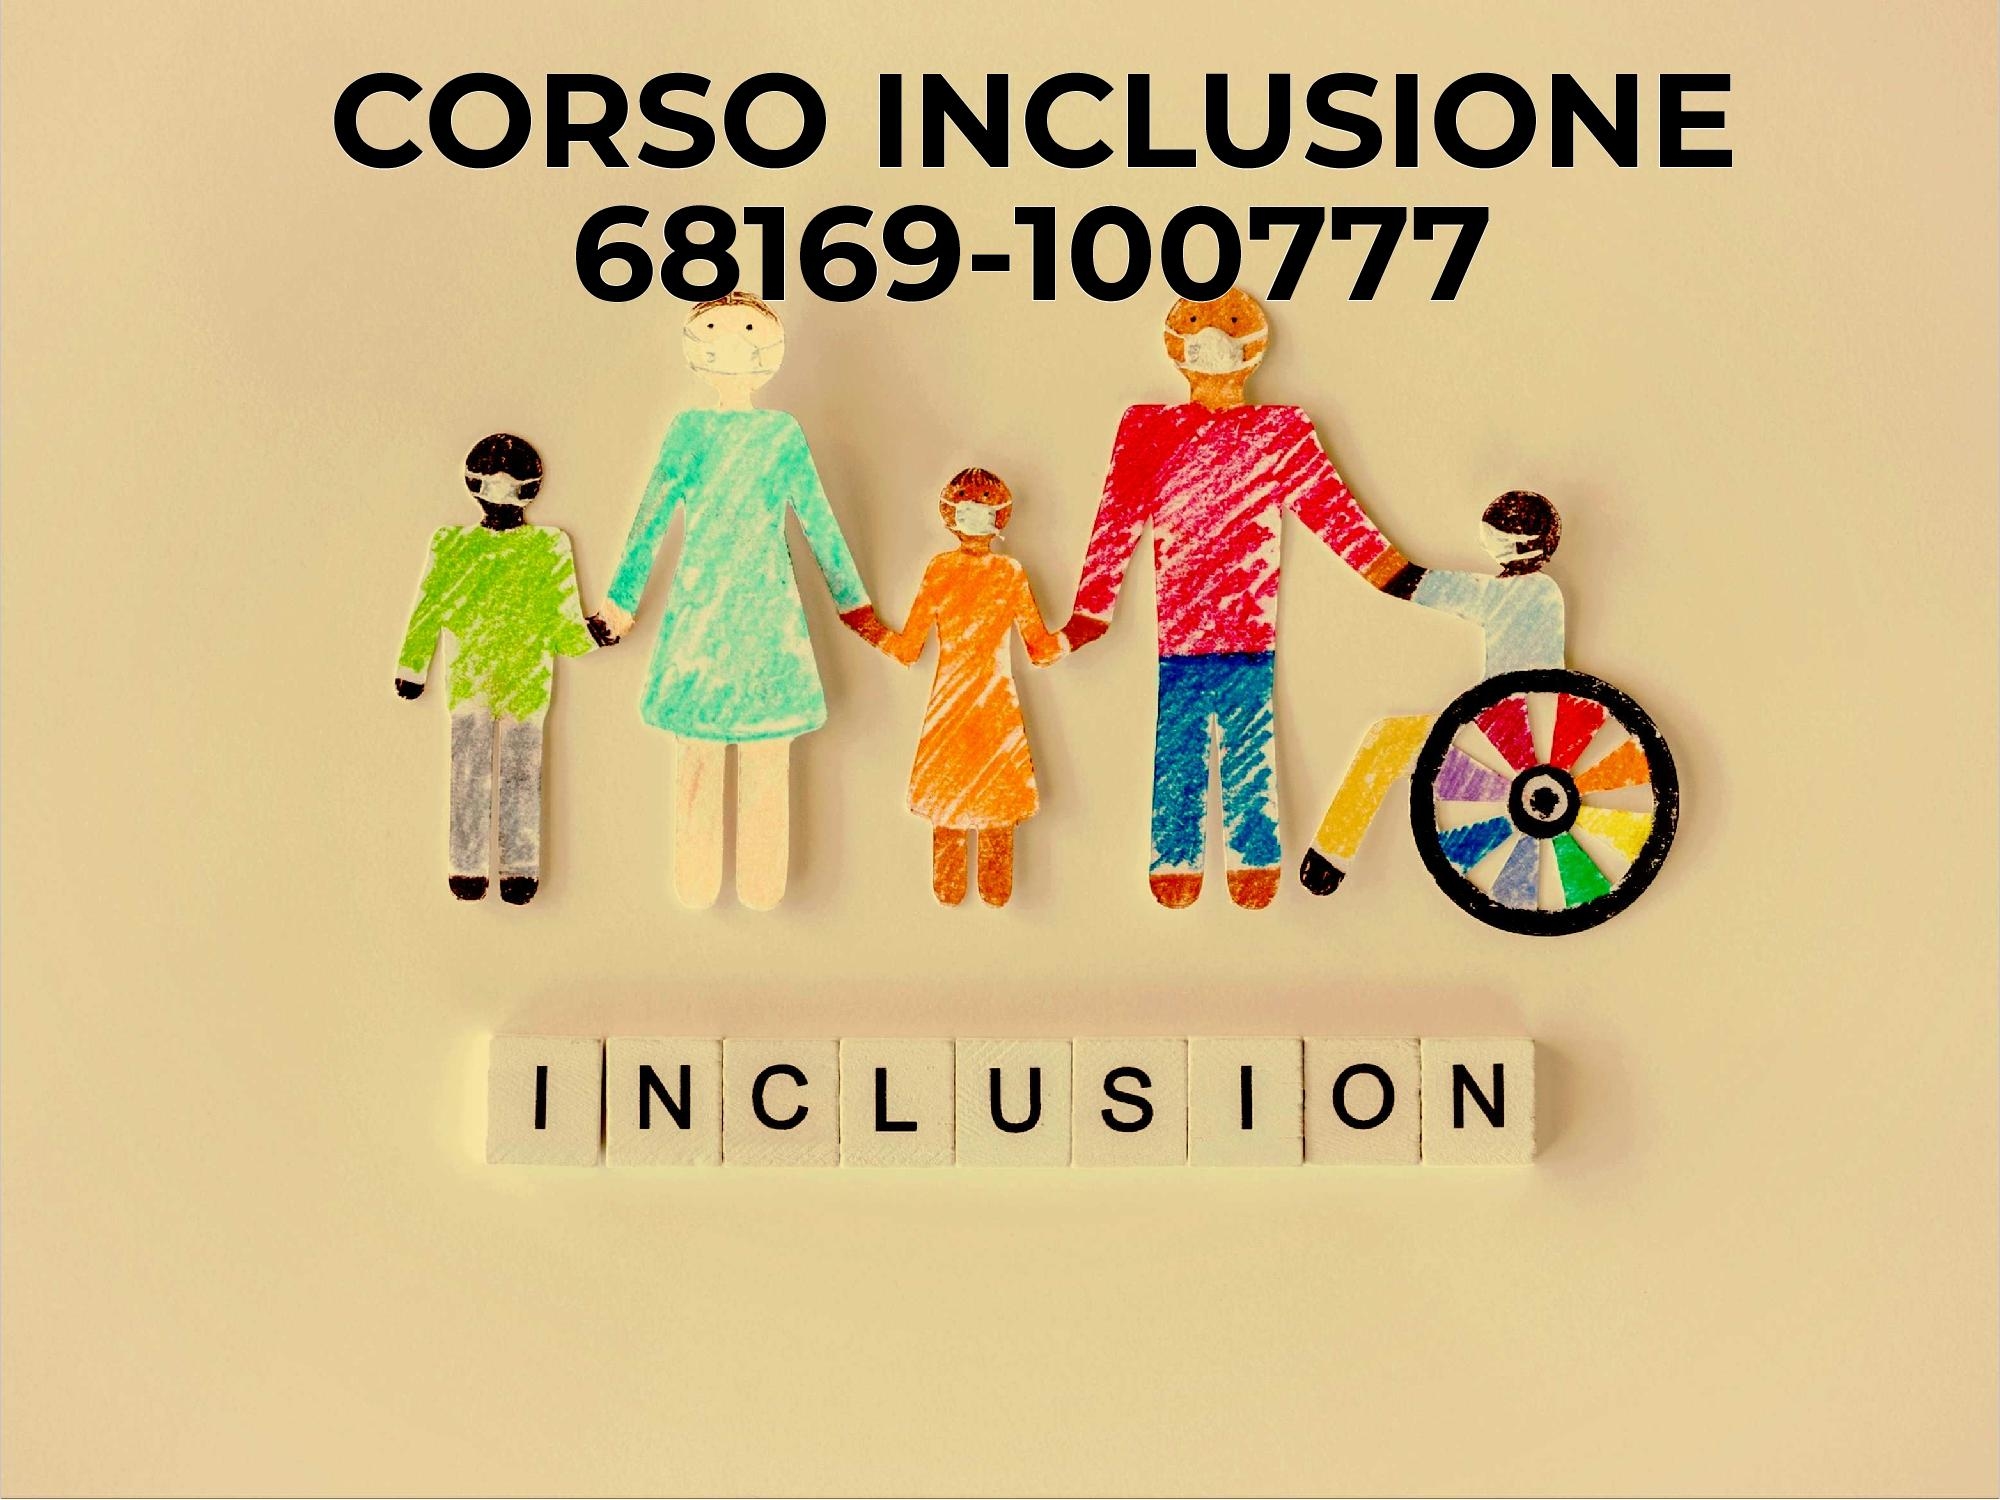 100777 “Formazione in servizio del personale docente ai fini dell’inclusione degli alunni con disabilità” (secondaria I grado)